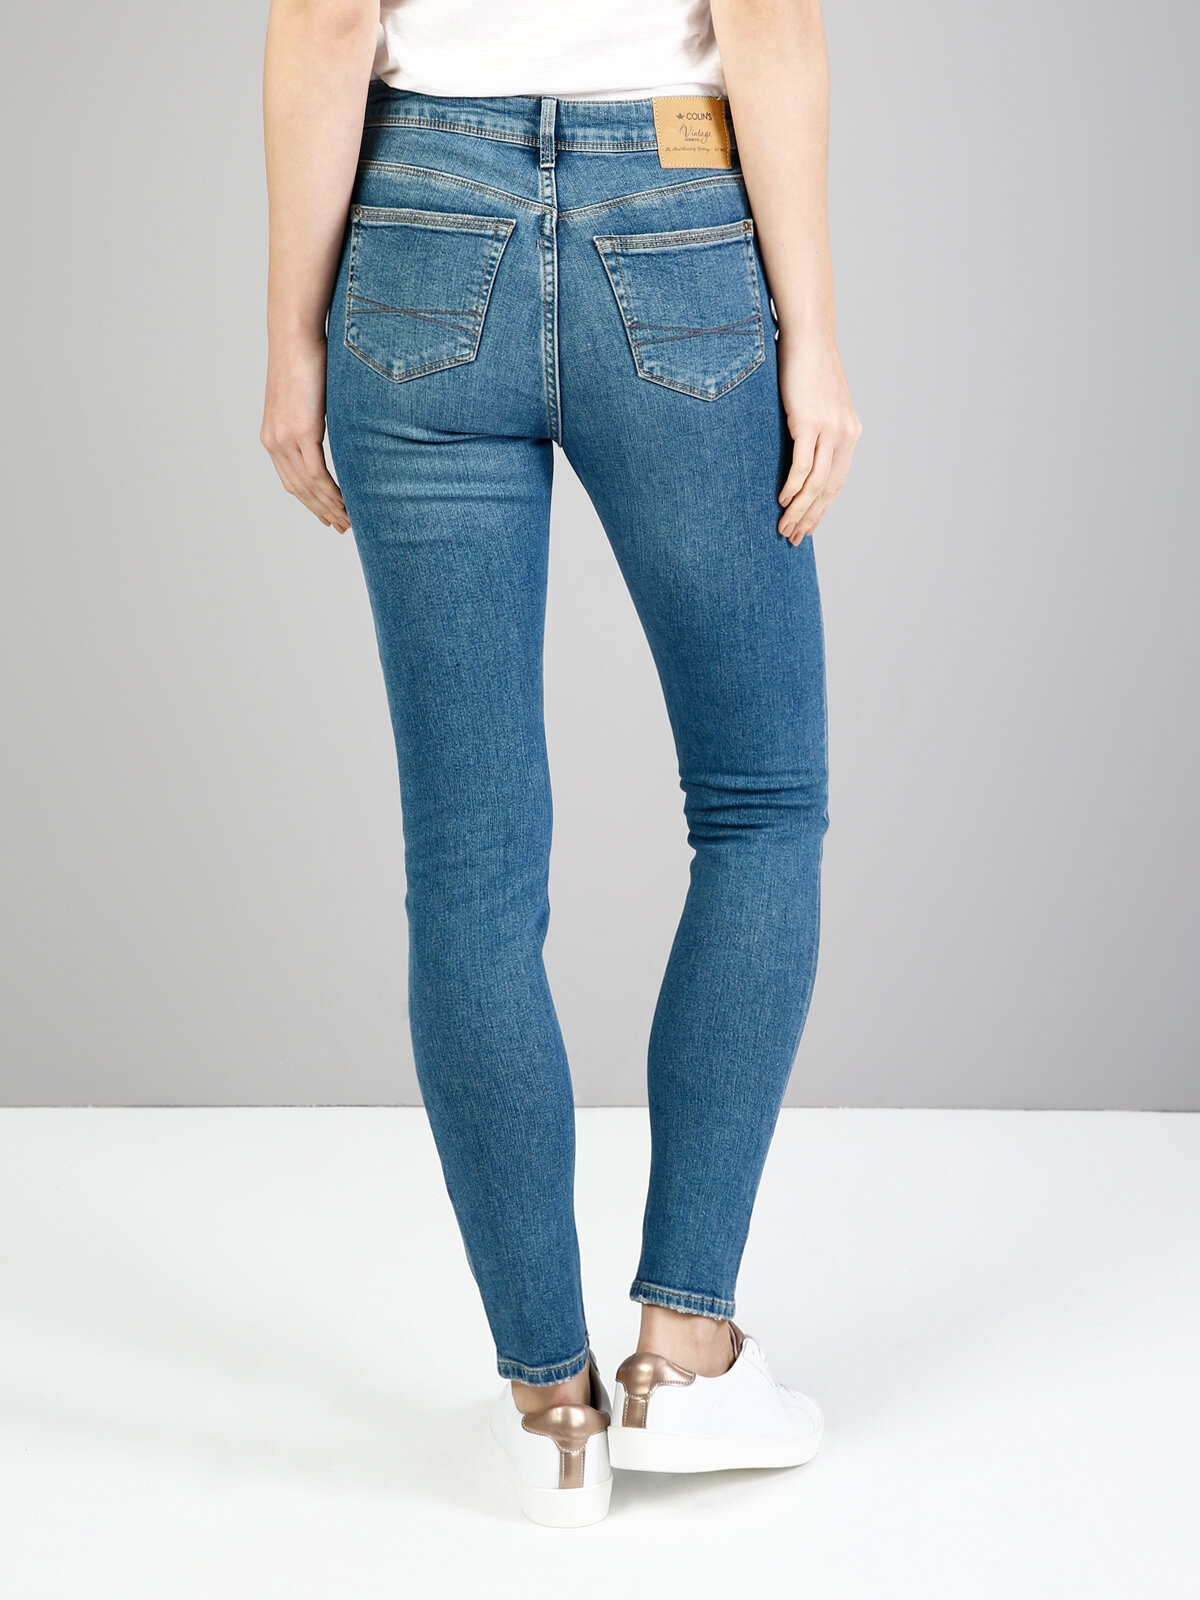 Afișați detalii pentru Albastru Femei Pantaloni Super Slim Fit